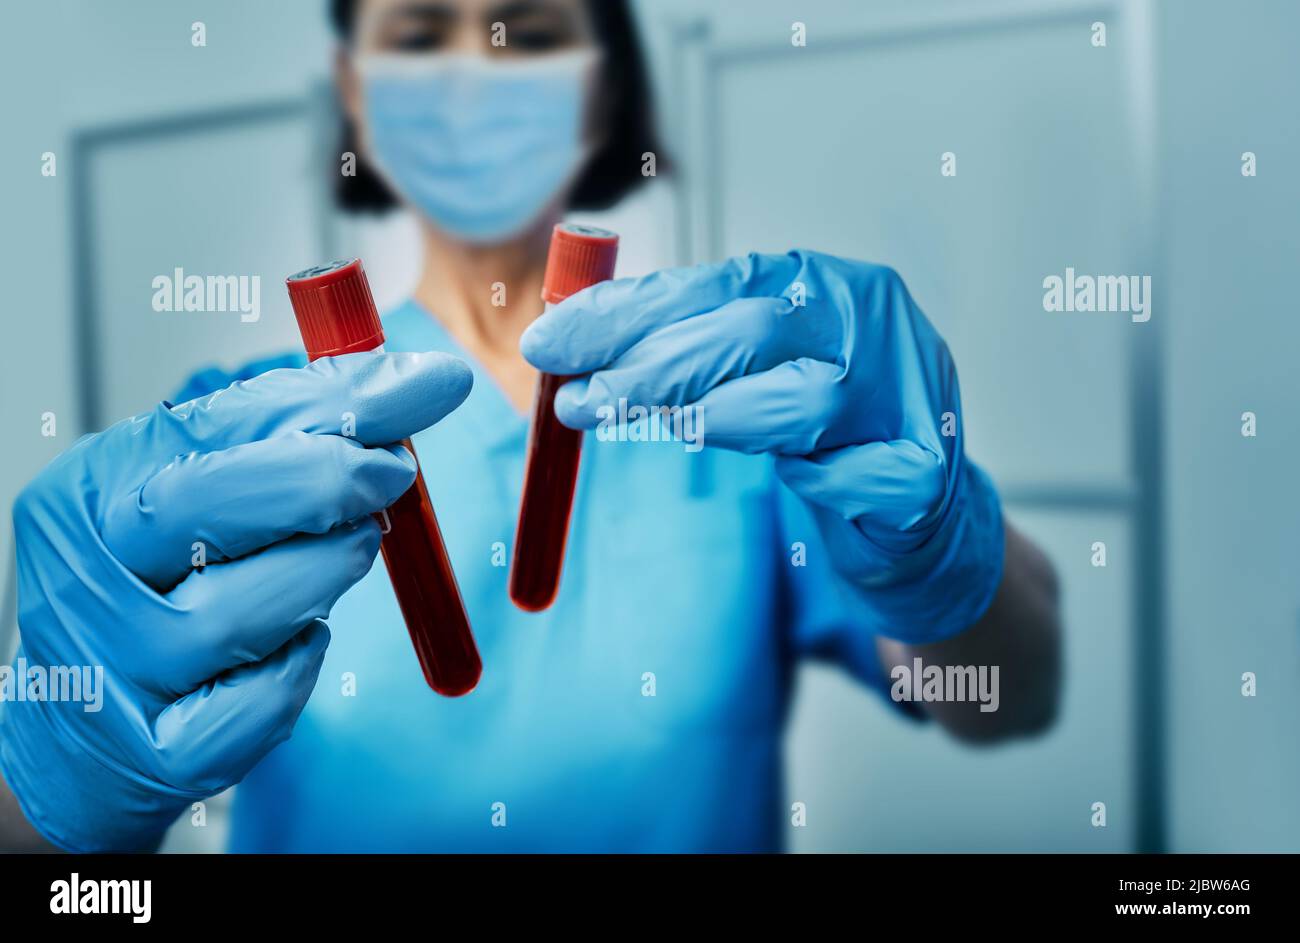 Blutprobenröhrchen mit blutinfiziertem Monkeypox-Virus in Laborgehilfen, Nahaufnahme Stockfoto